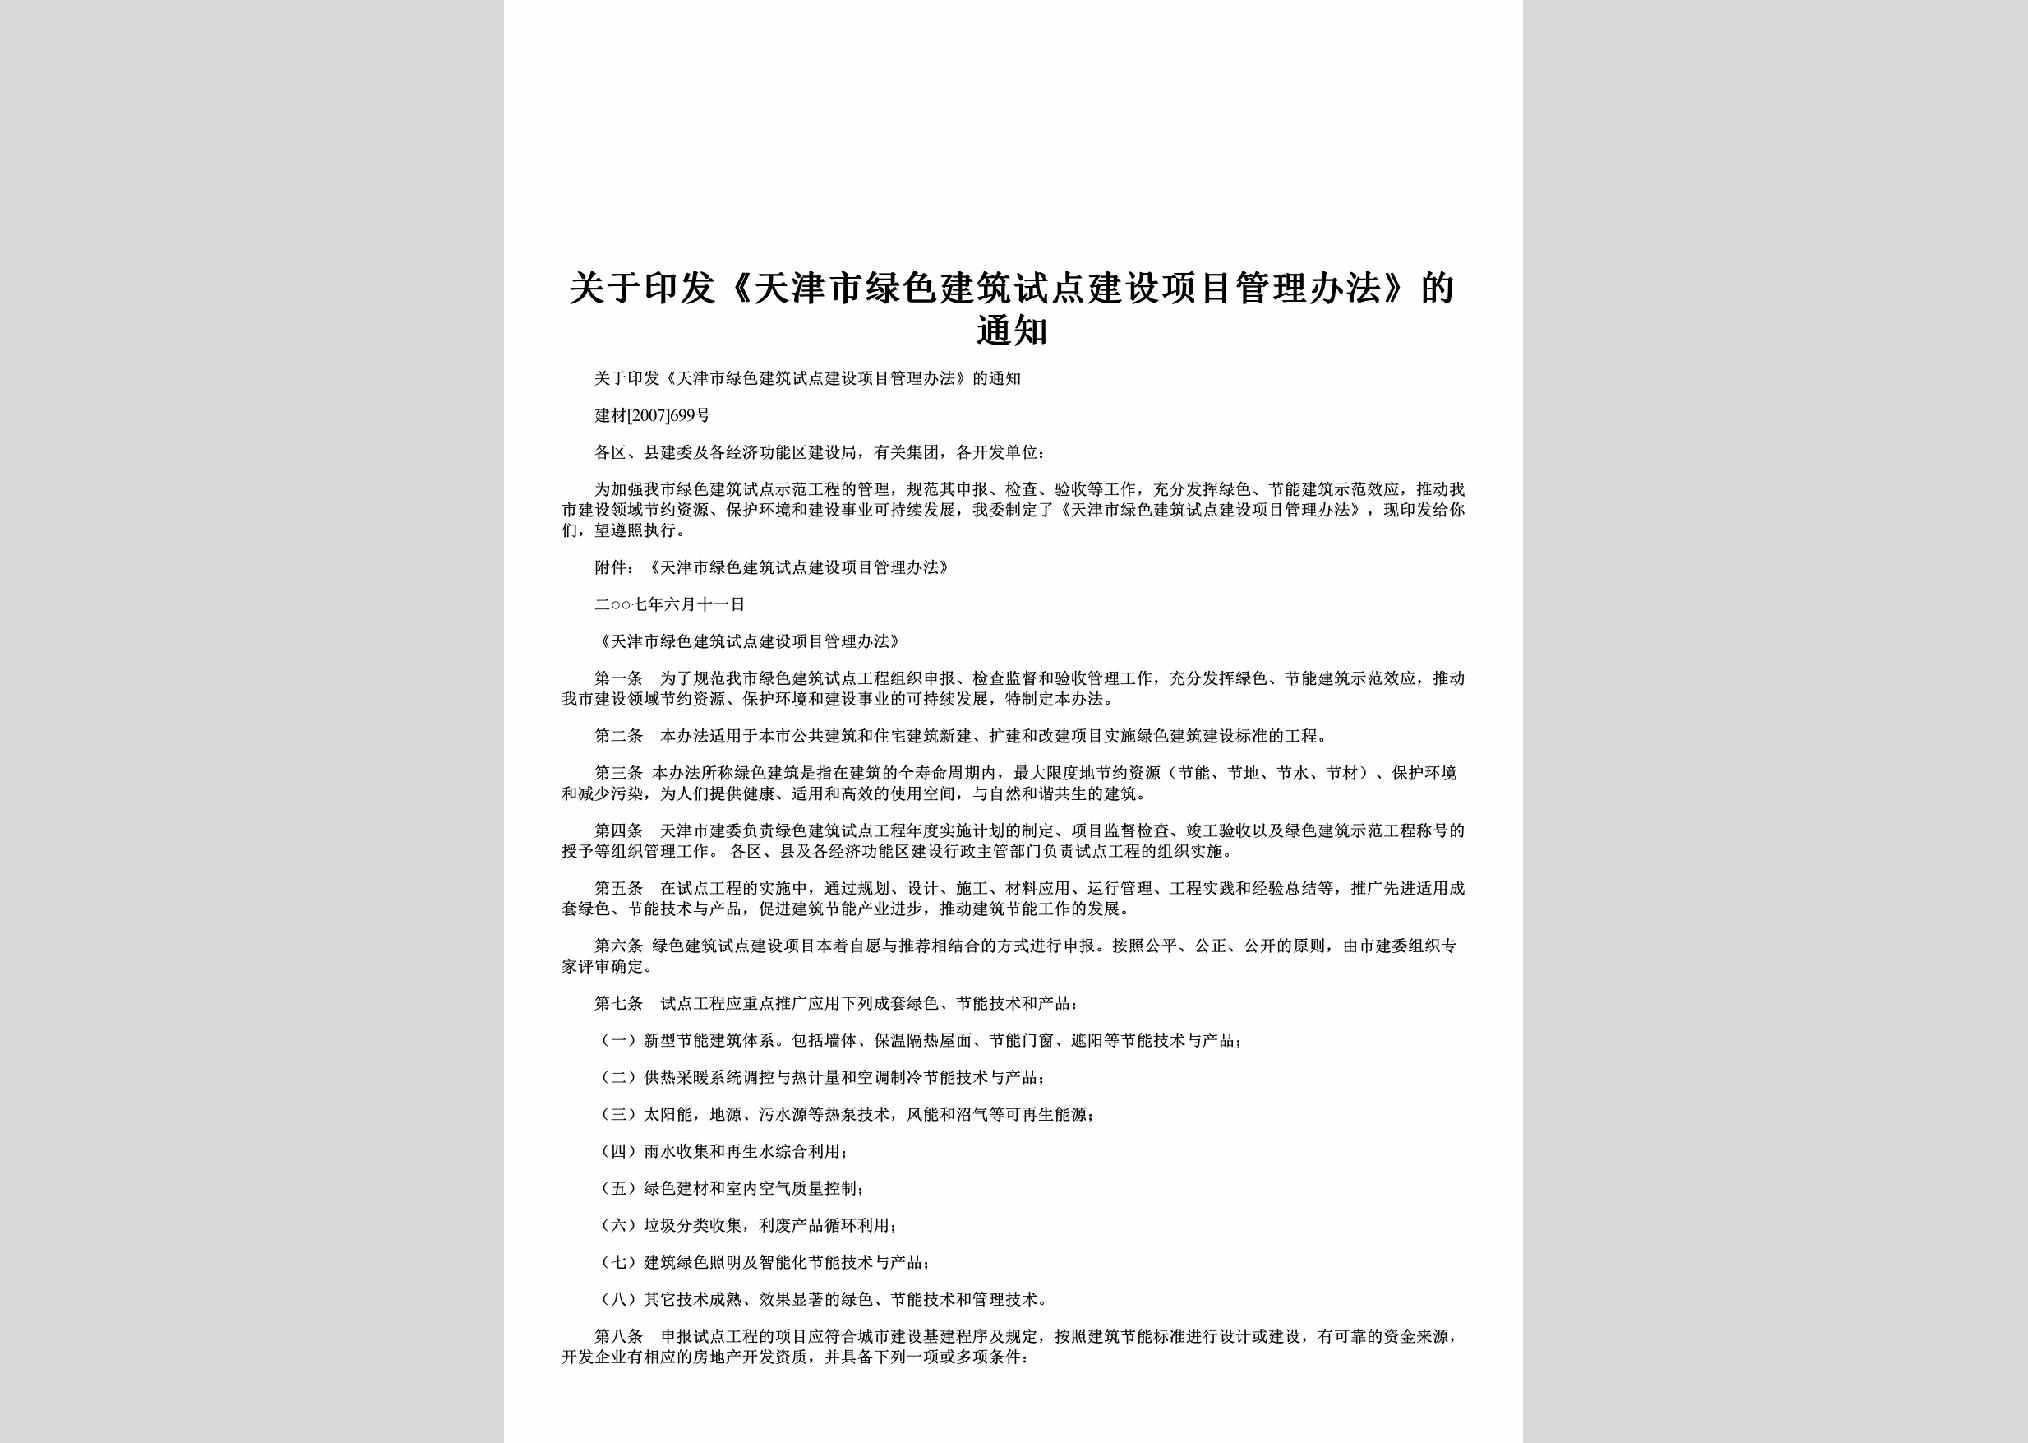 建材[2007]699号：关于印发《天津市绿色建筑试点建设项目管理办法》的通知